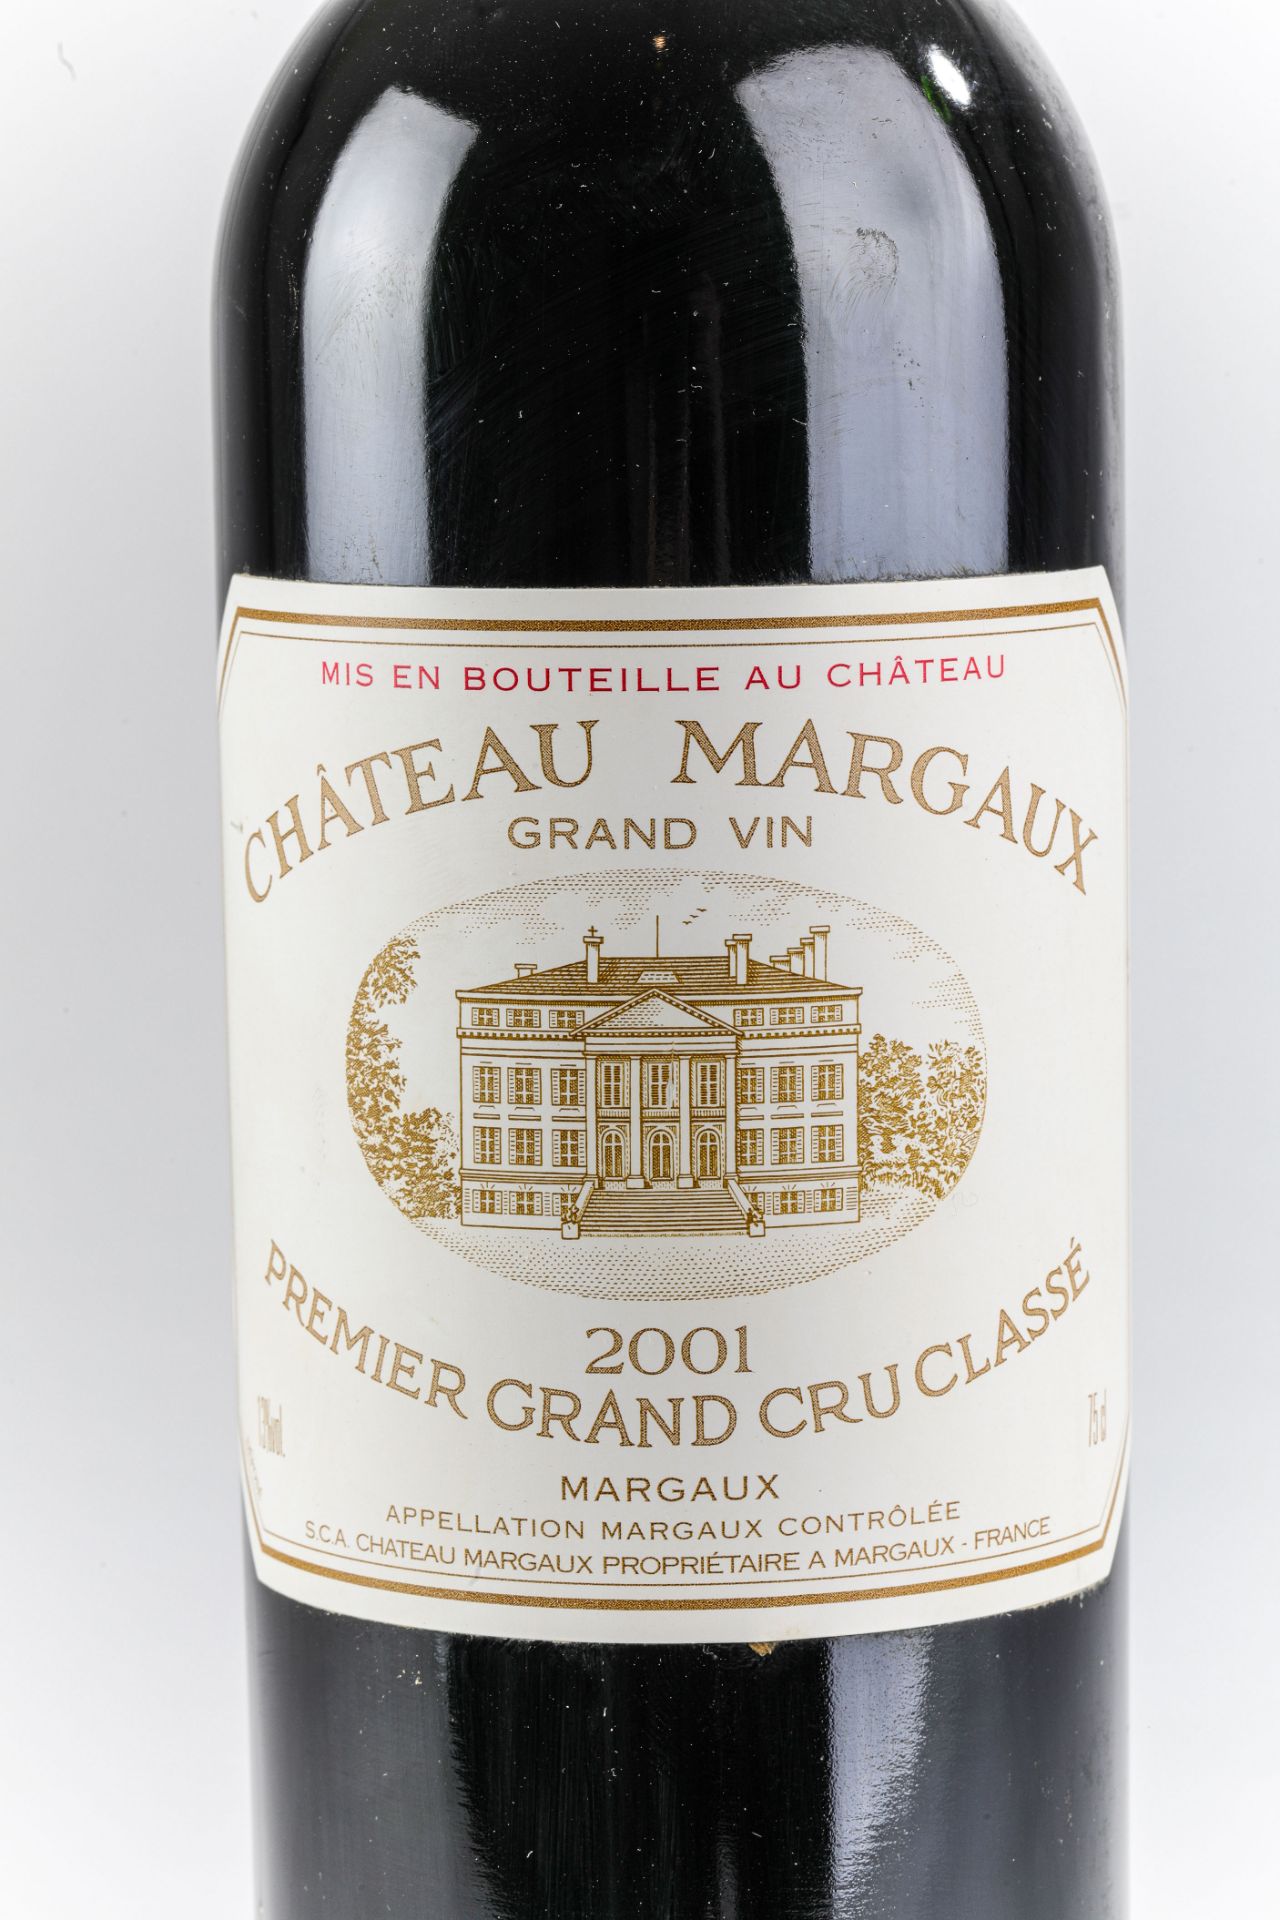 CHÂTEAU MARGAUX. 2001. Premier grand cru classé. Margaux. - Image 2 of 2